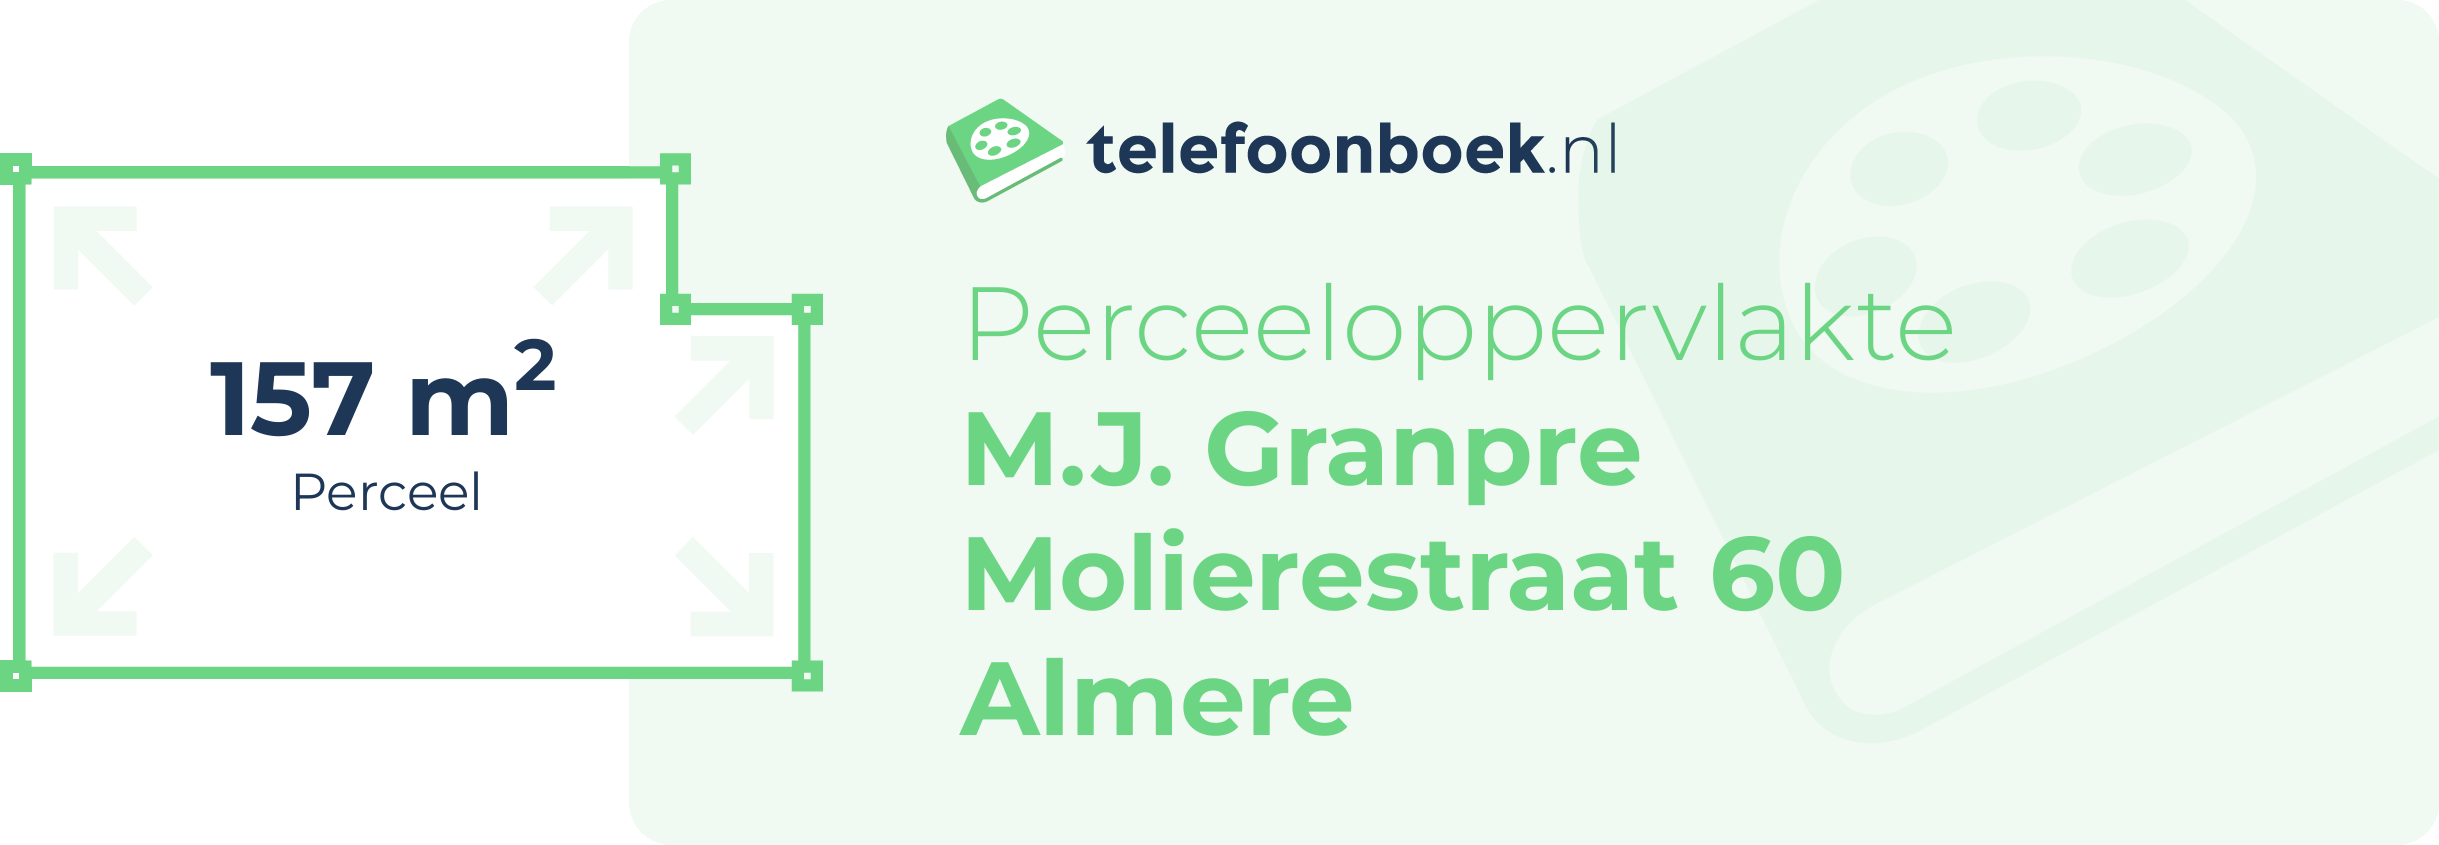 Perceeloppervlakte M.J. Granpre Molierestraat 60 Almere